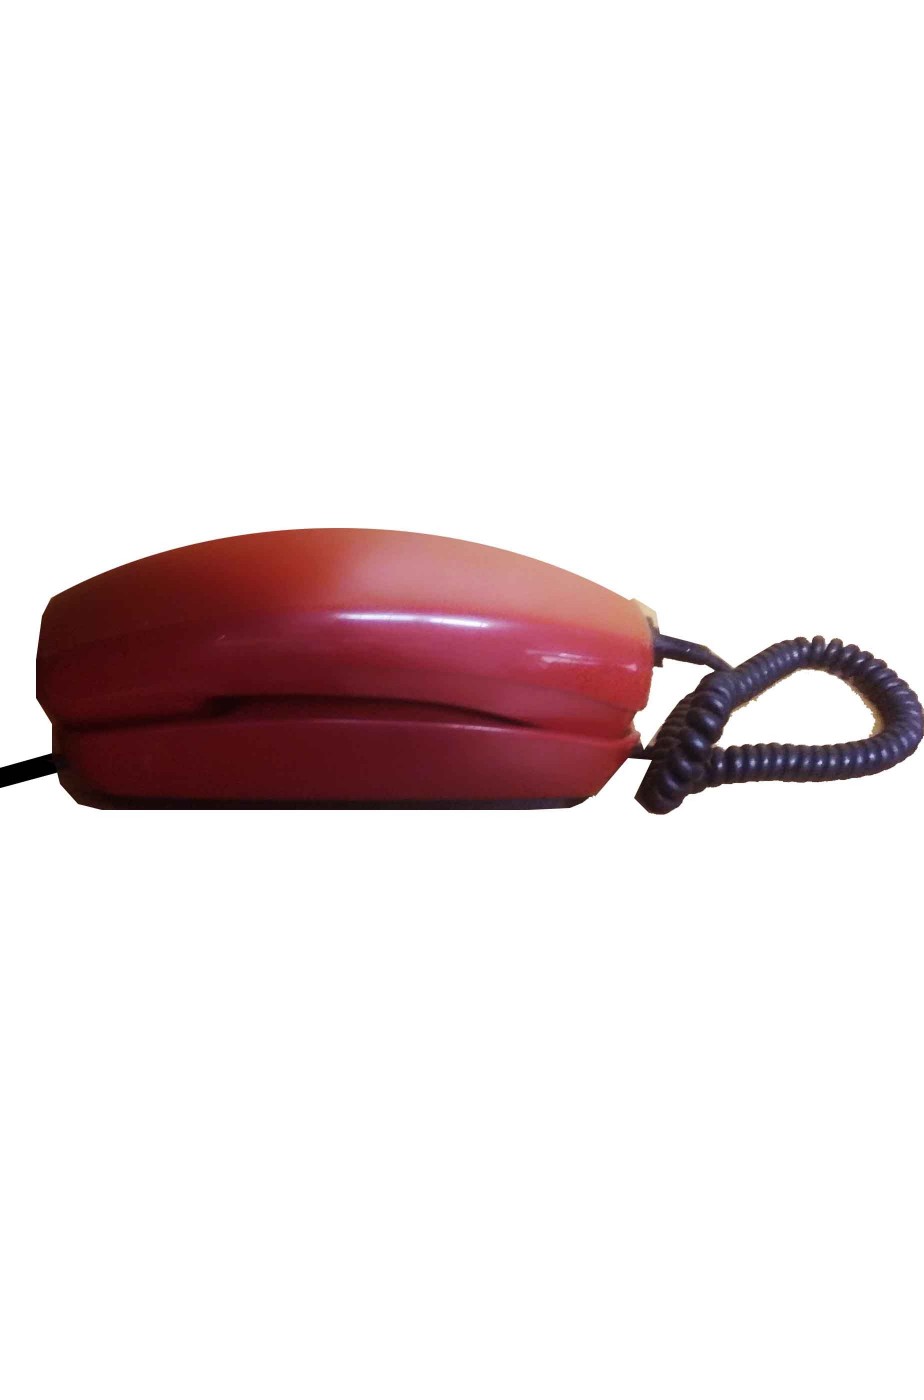 Telefono rosso gondola vintage a disco SIP anni 80 fisso